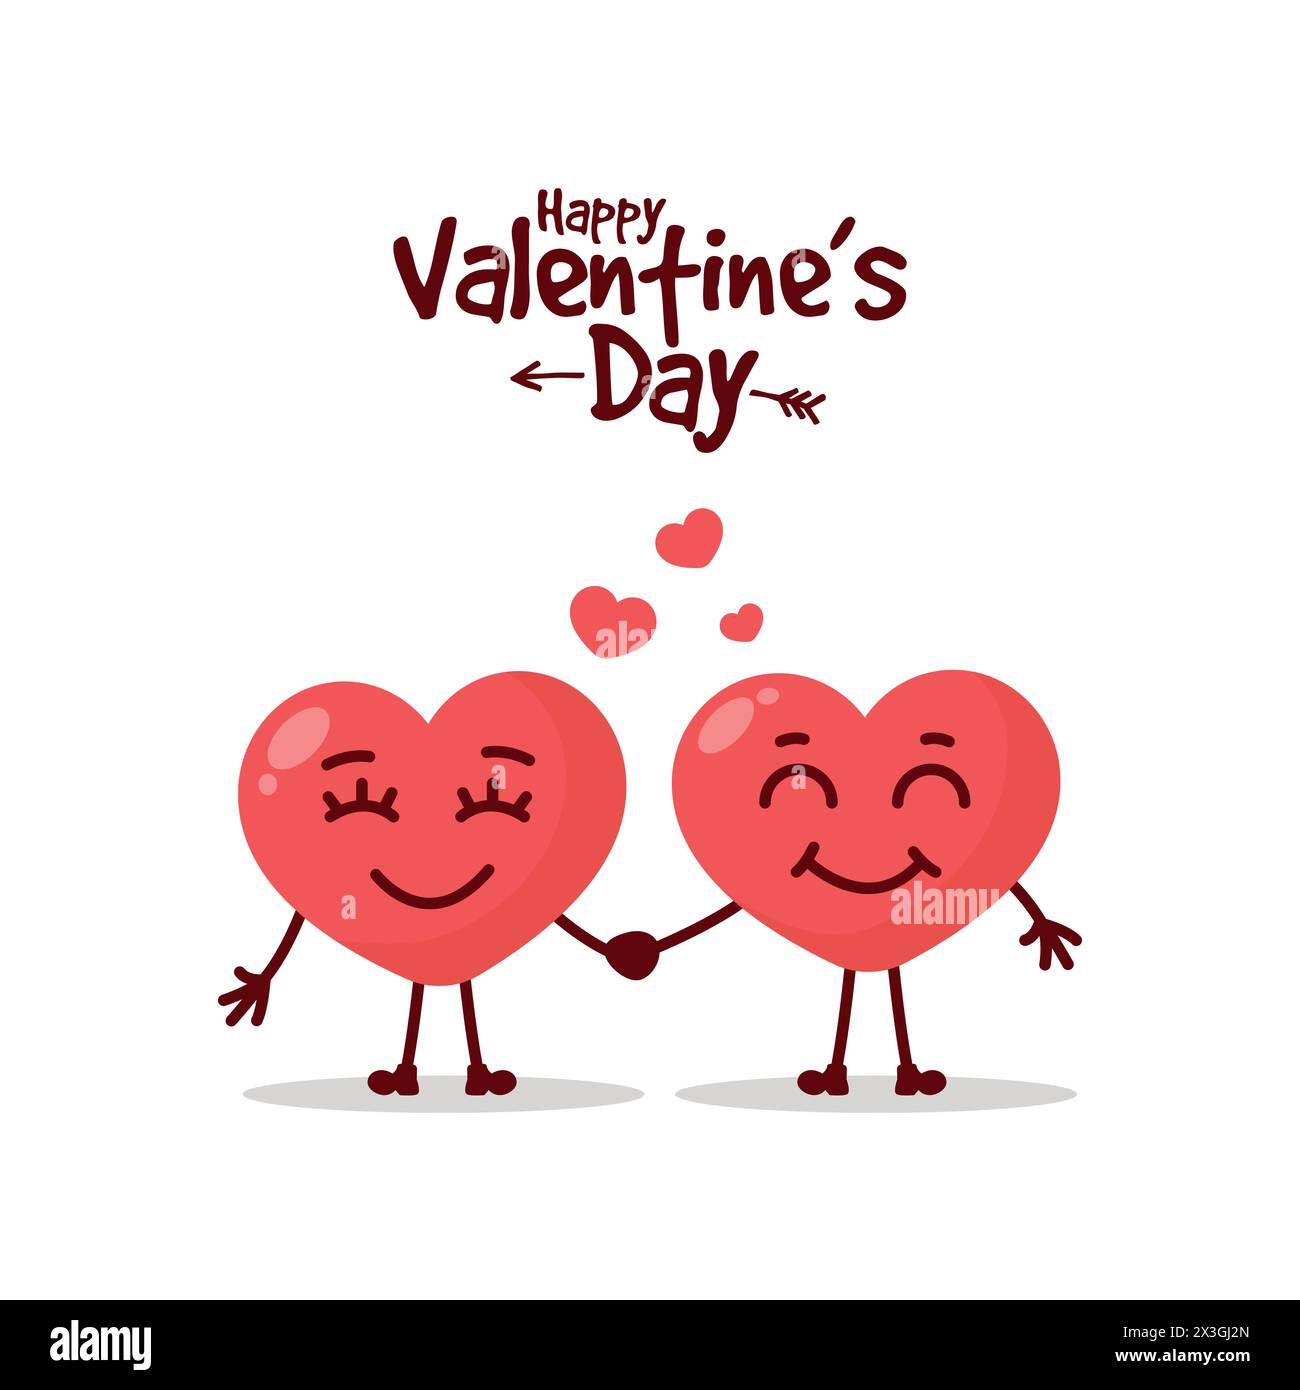 Zwei fröhliche Herzen auf weißem Hintergrund. Cartoon Heart Kollektion. Frohes Valentinstag-Banner, Poster, Postkarte, Flyer. Vektordarstellung. Stock Vektor